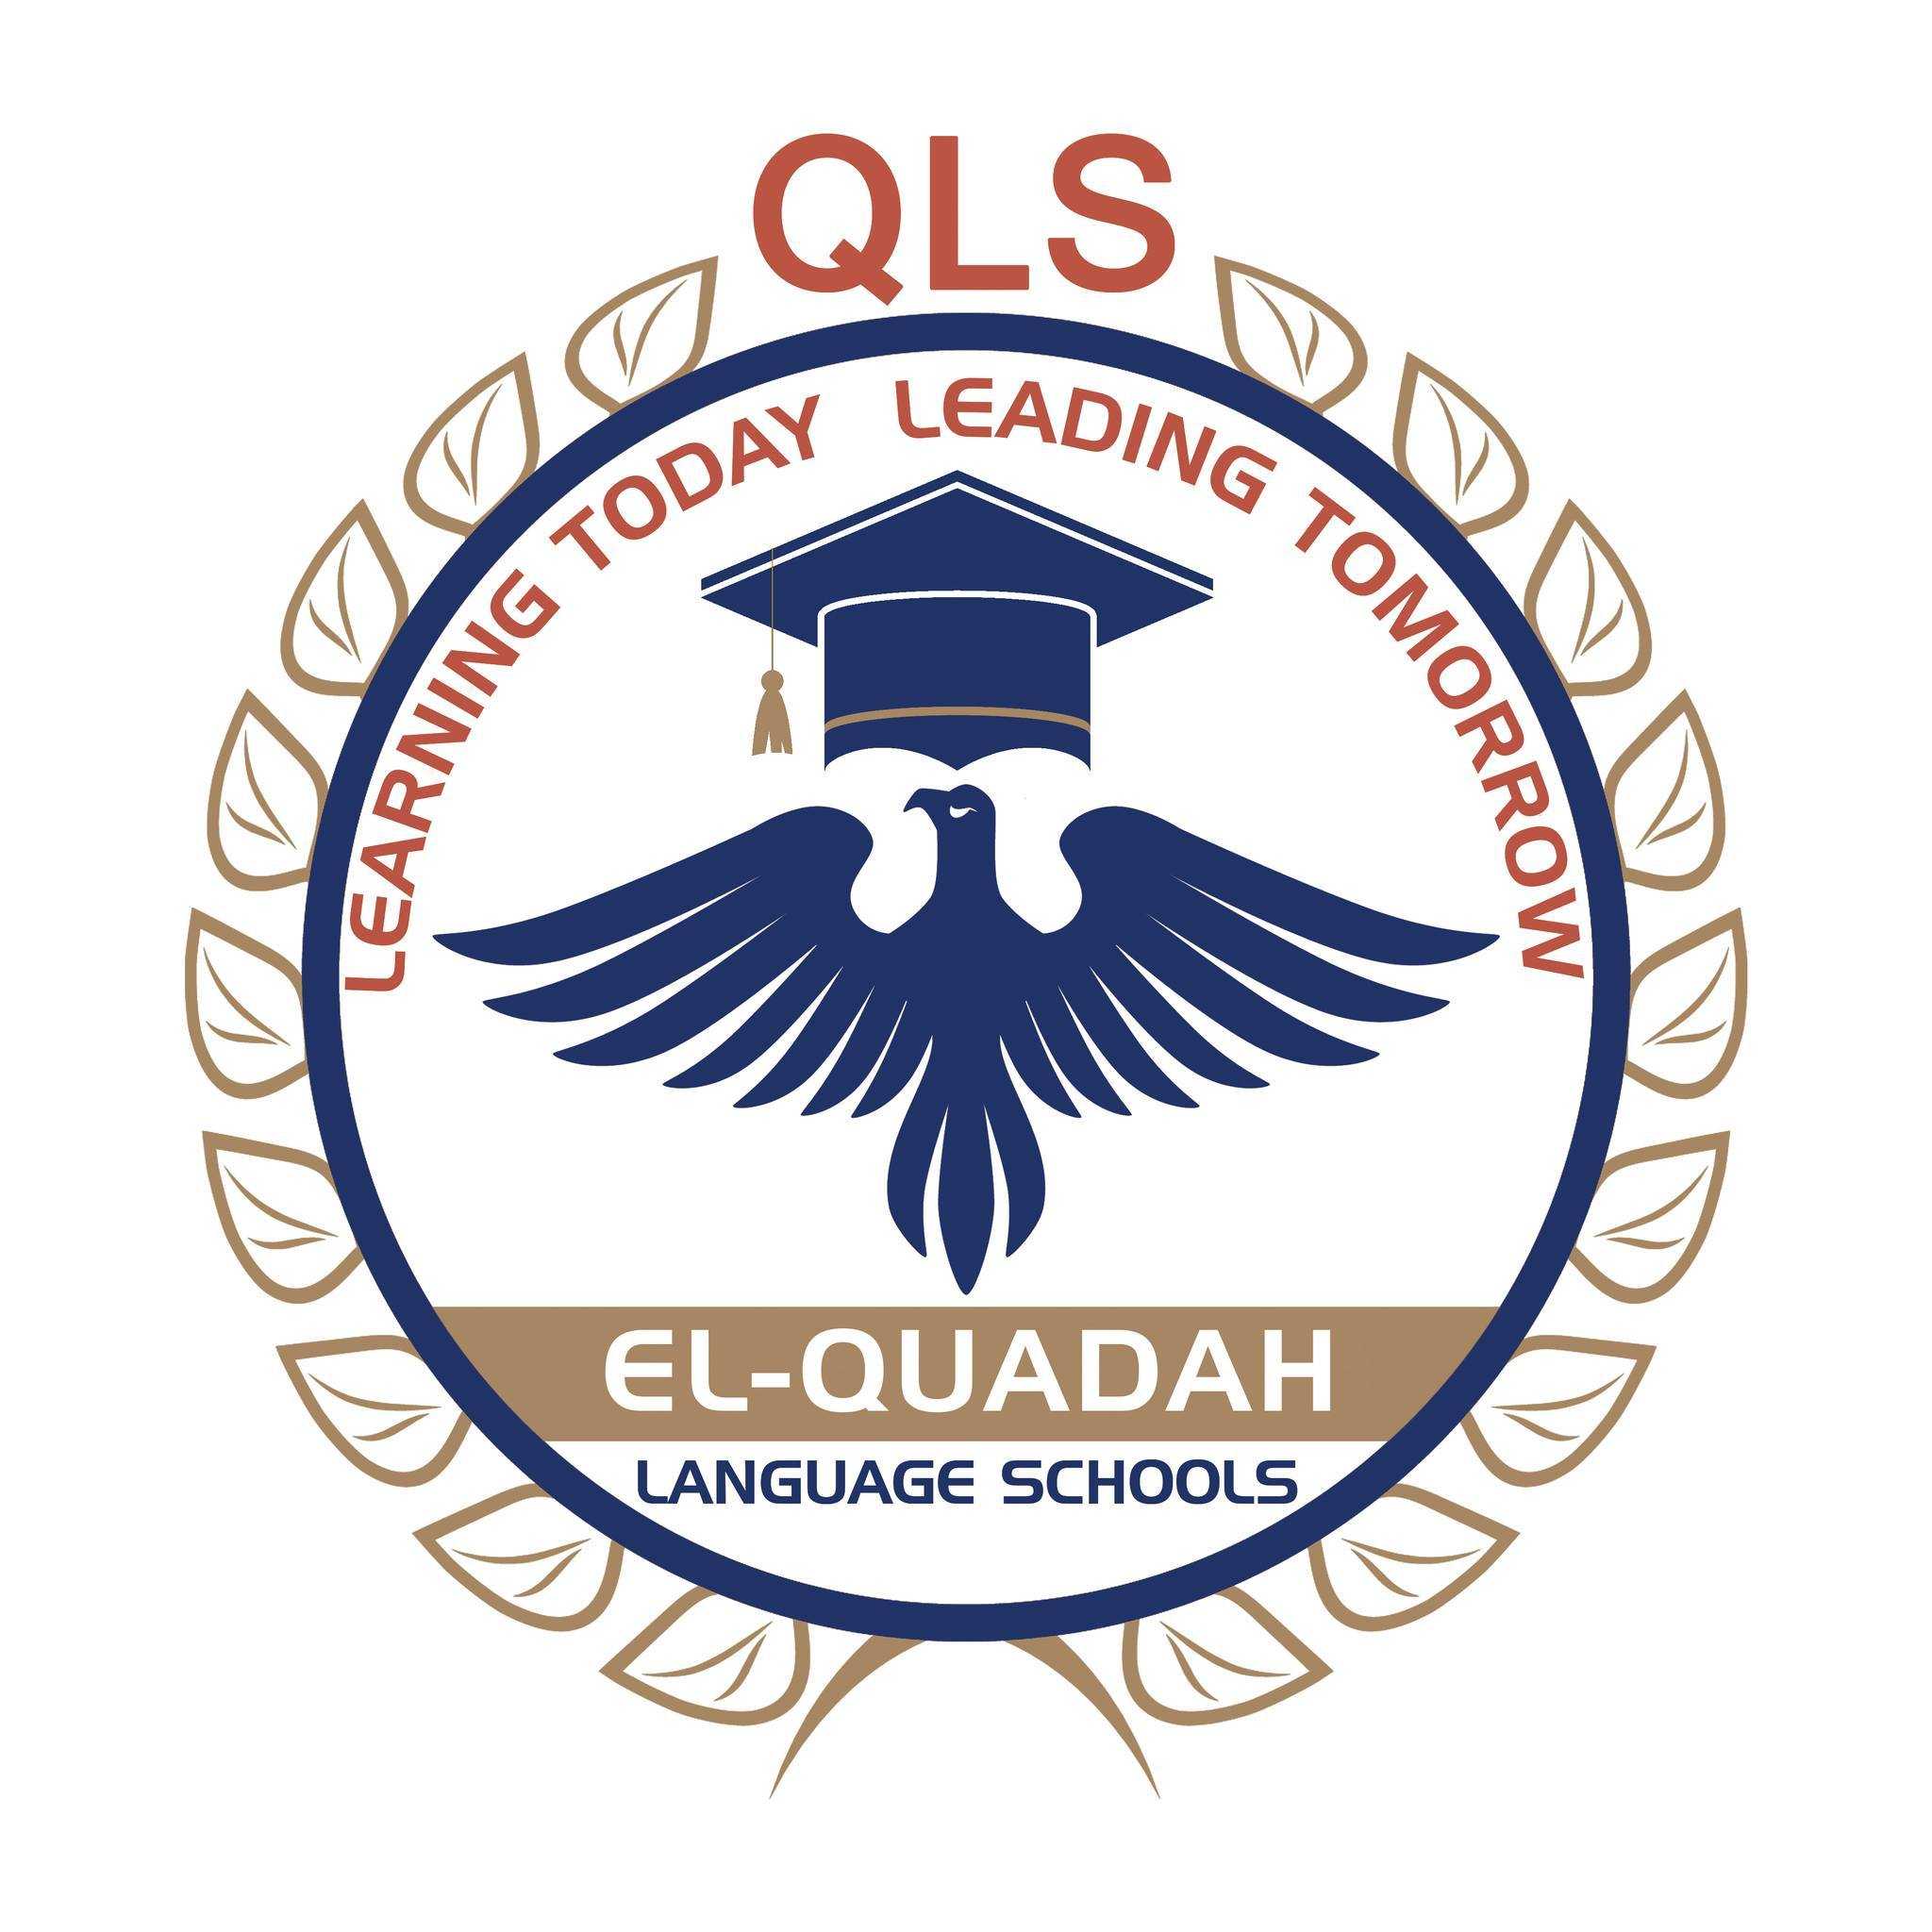 El-Quadah Language Schools